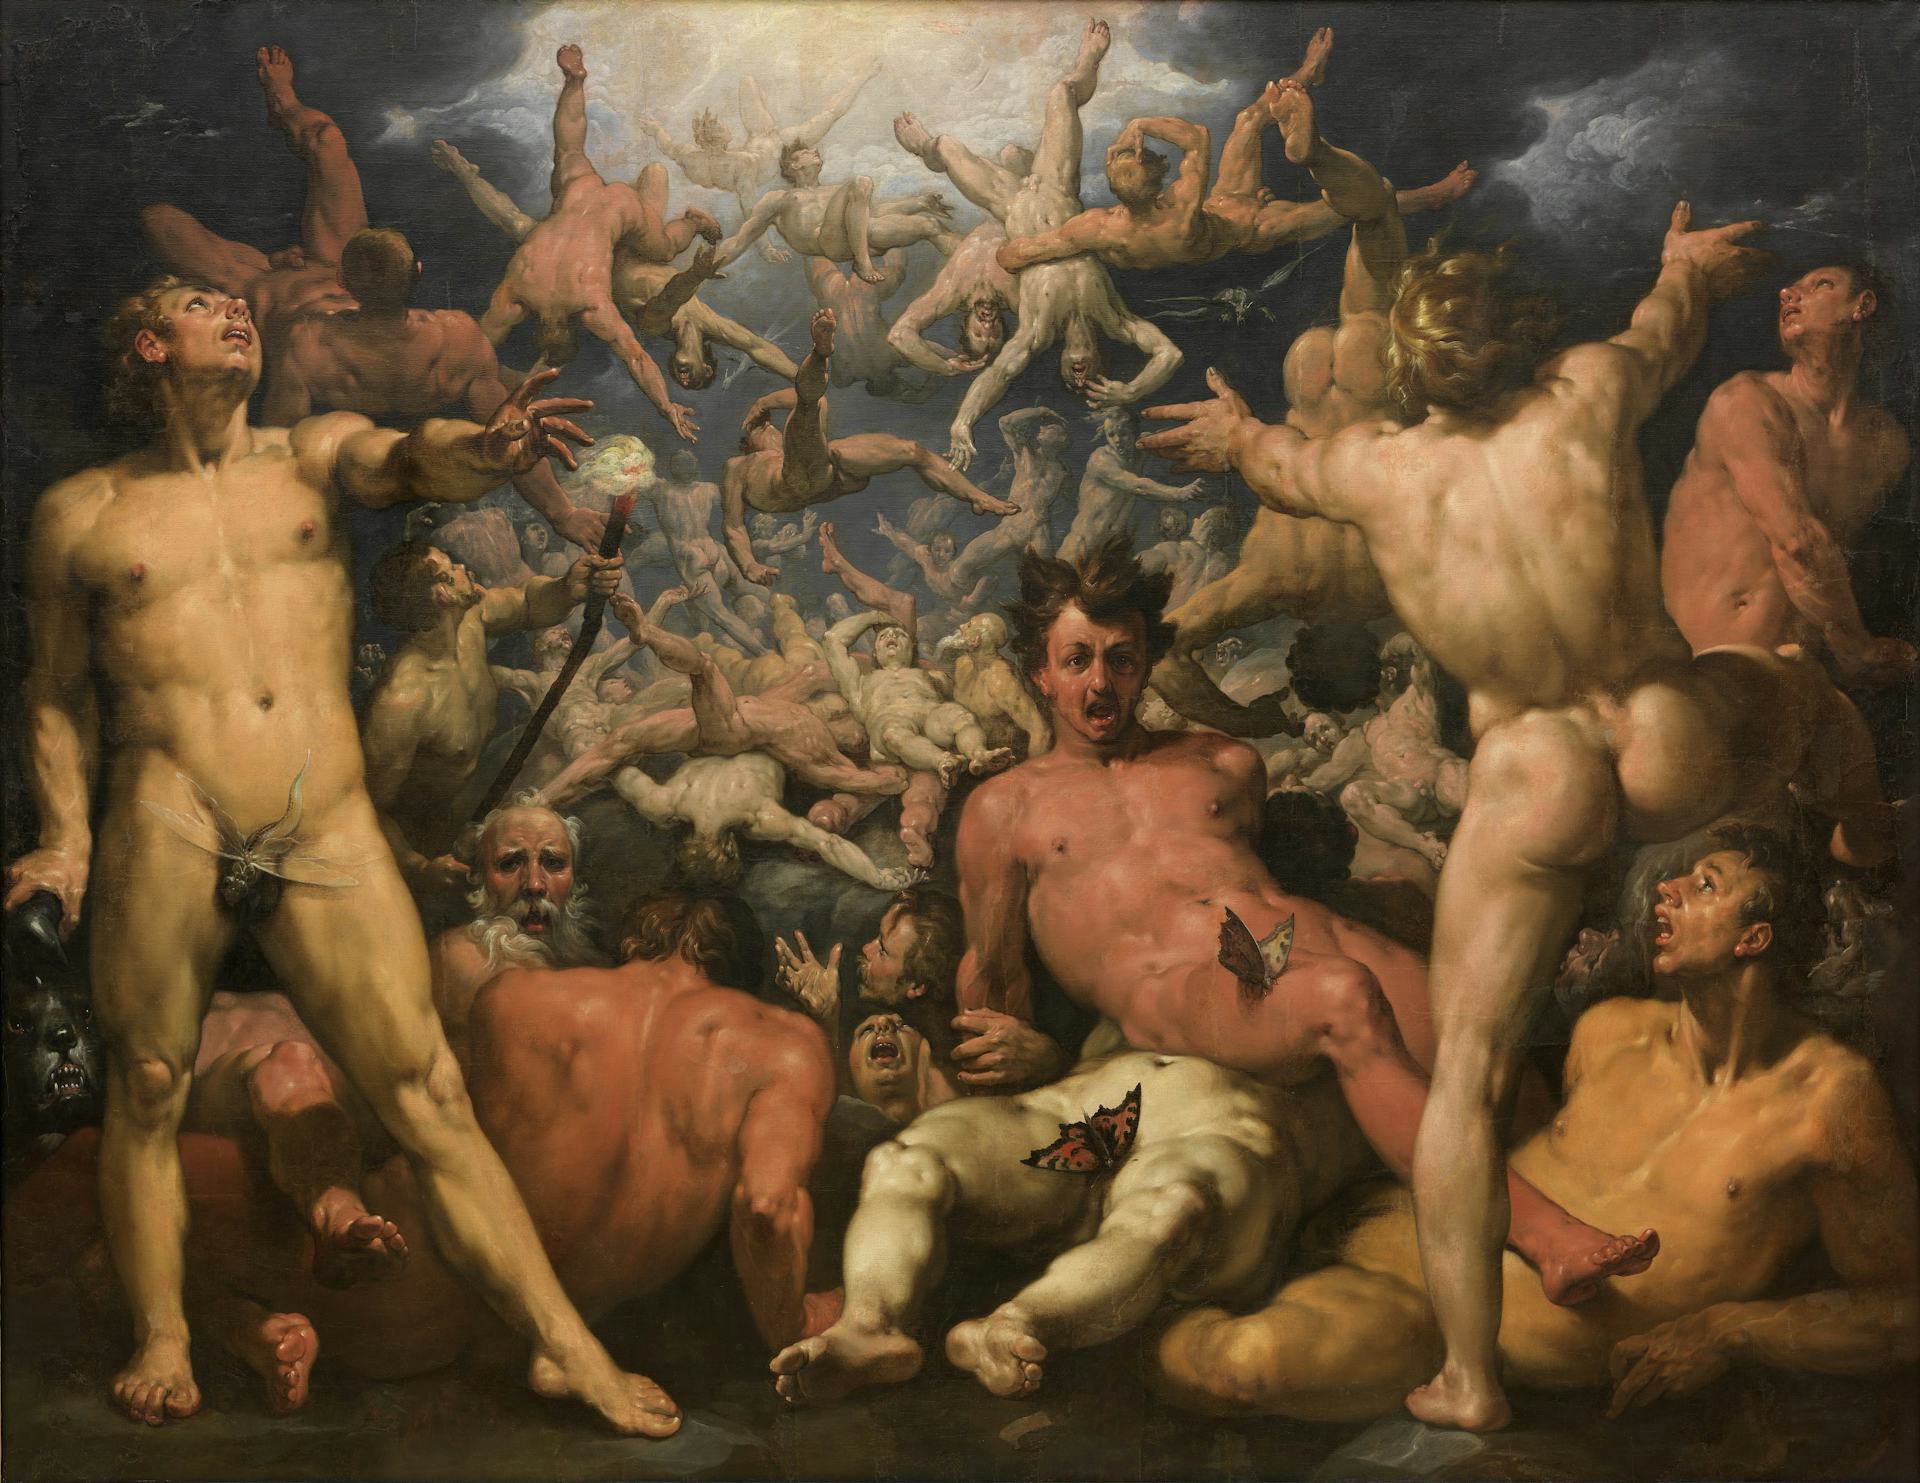 Fall of the Titans by Cornelis van Haarlem (ca. 1588)